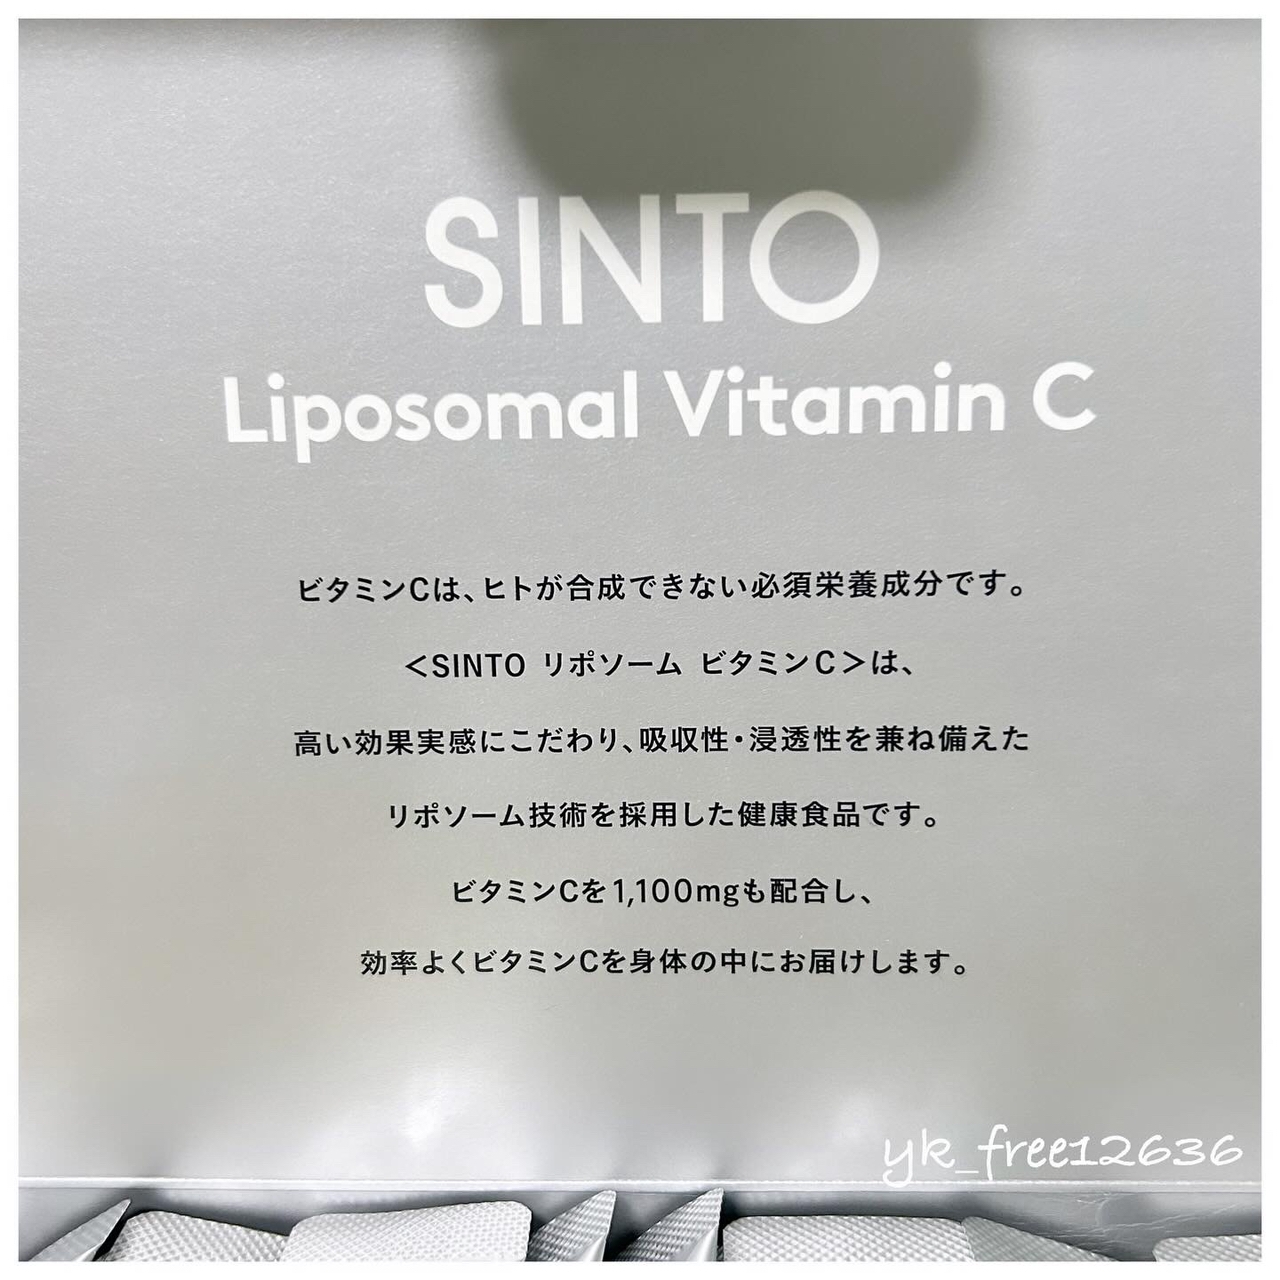 SiNTO(シントー) リポソーム ビタミンCの良い点・メリットに関するyk_free12636さんの口コミ画像2